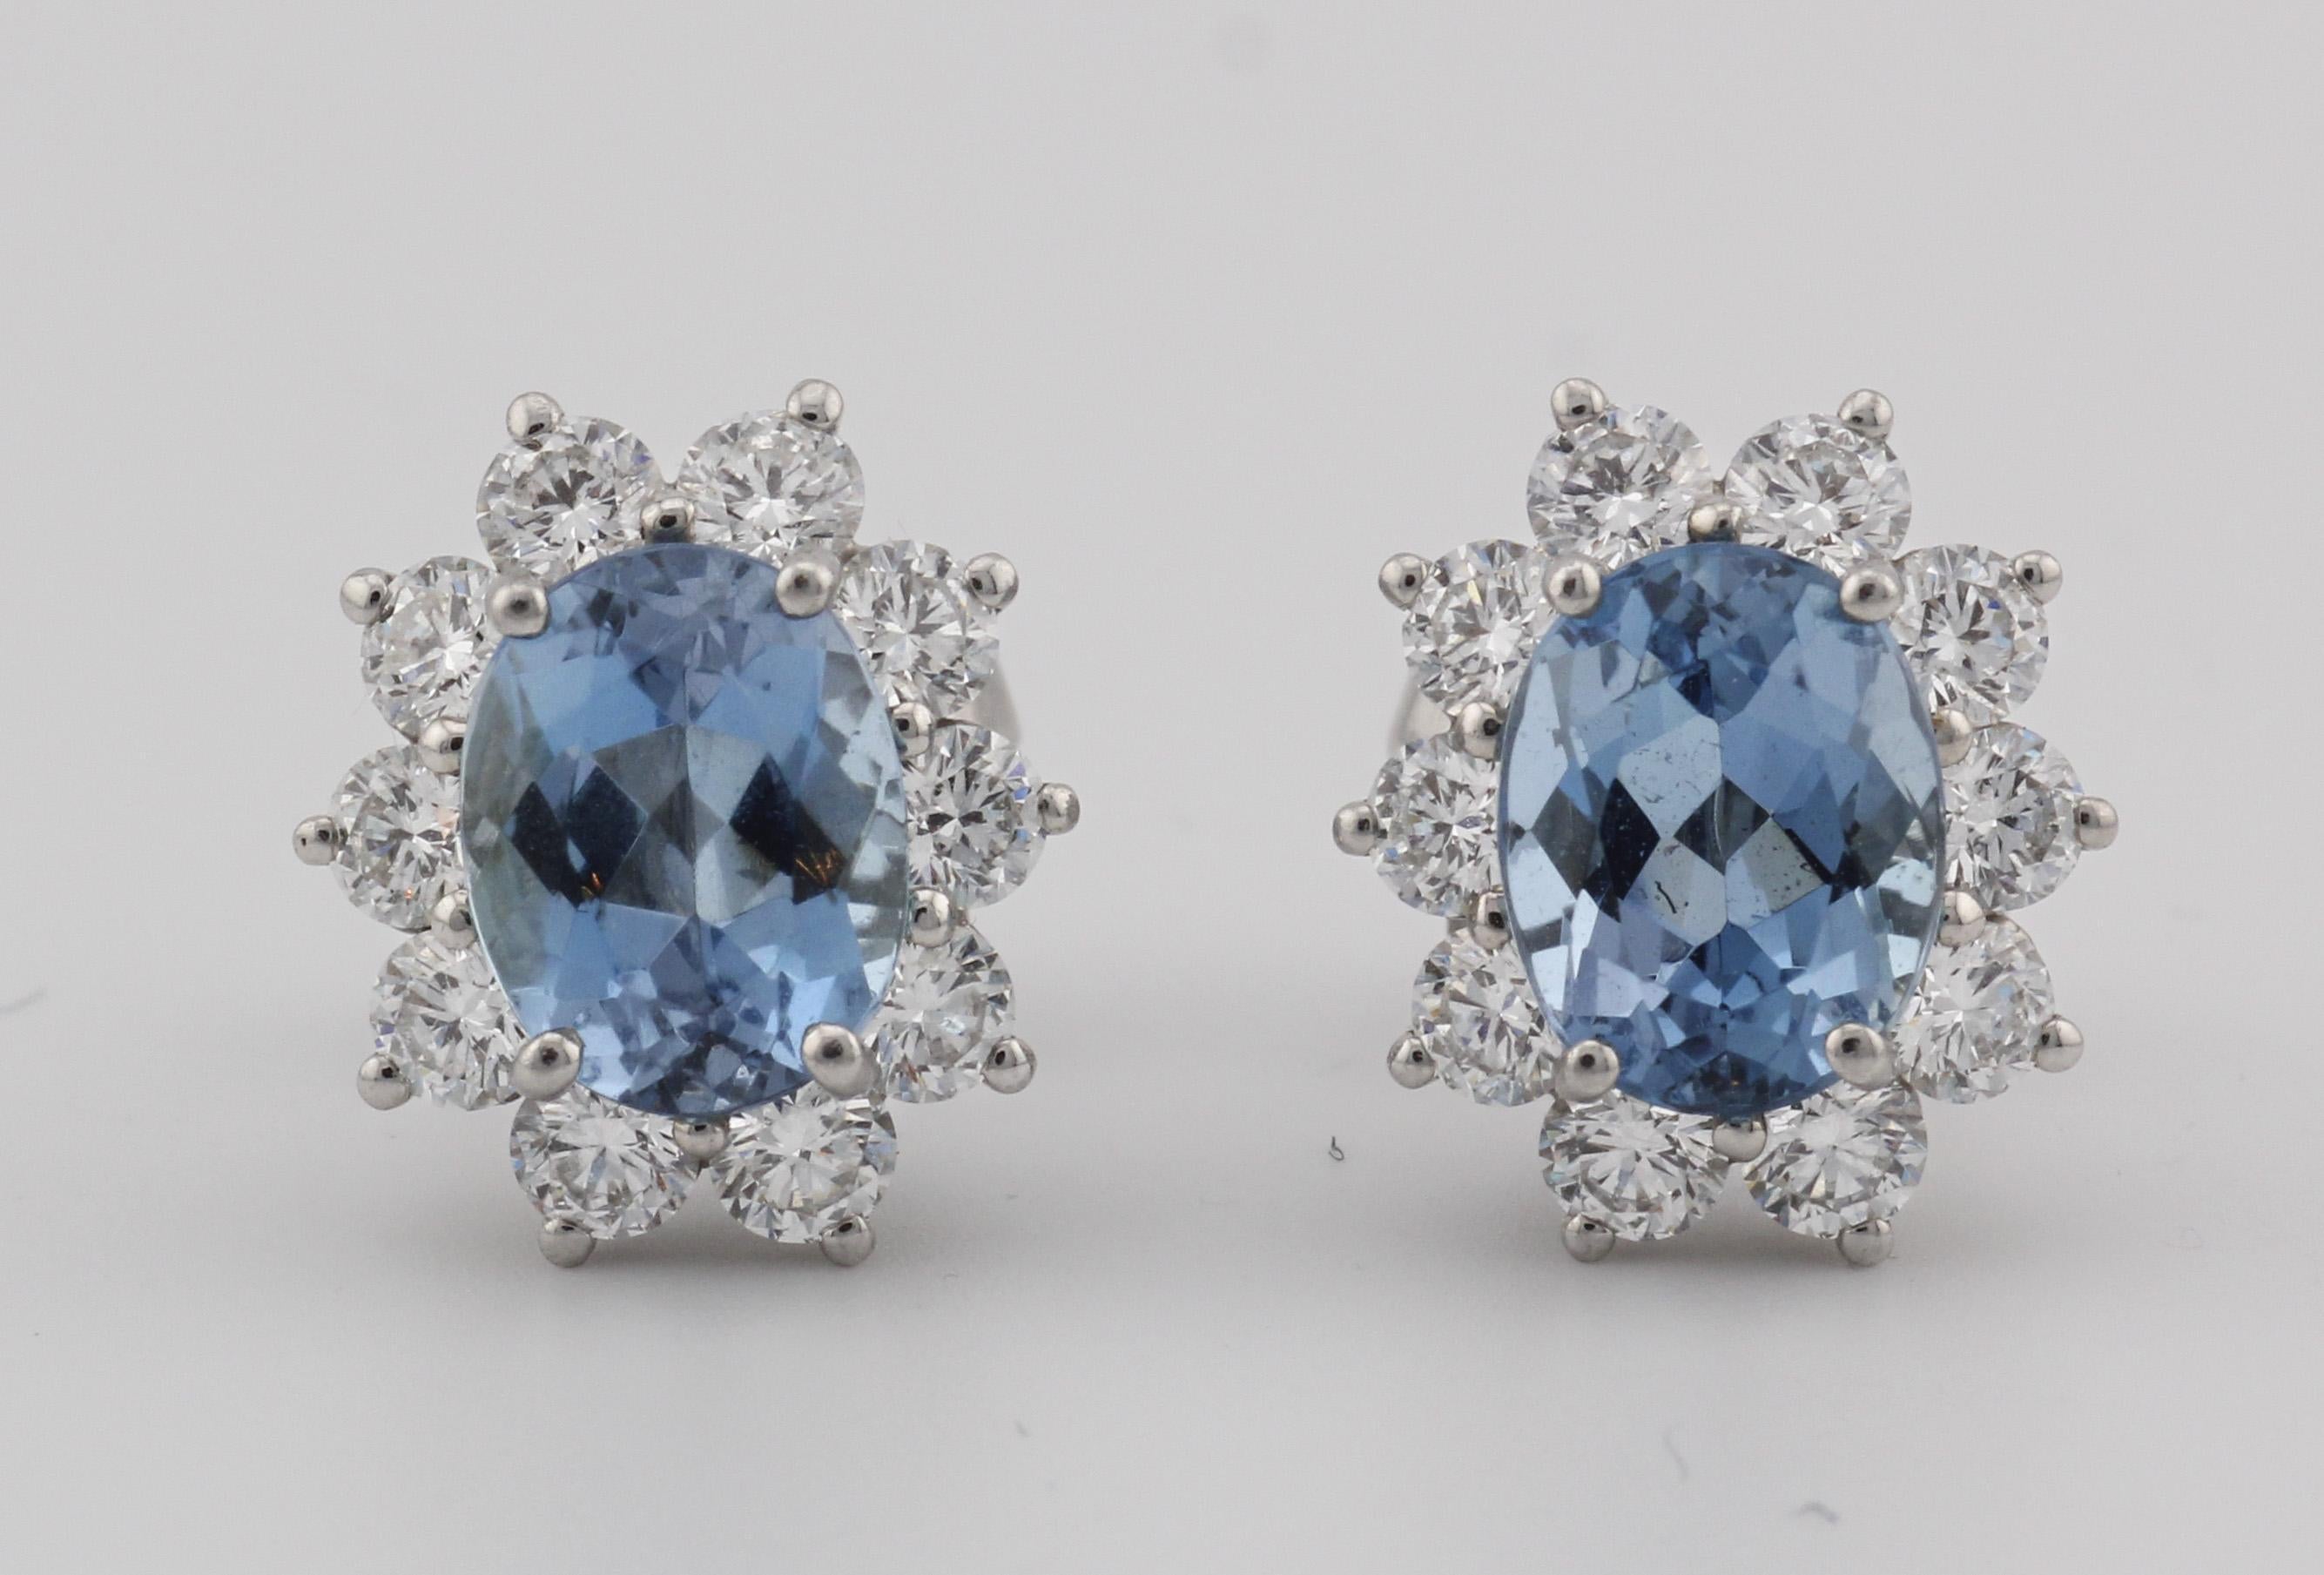 Die Tiffany & Co. Aquamarin-Diamant-Platin-Ohrstecker sind der Inbegriff von Eleganz und Raffinesse. Sie zeigen die zeitlose Schönheit von Aquamarin-Edelsteinen und exquisite Handwerkskunst. Diese Ohrringe wurden von der Juwelier-Ikone Tiffany & Co.